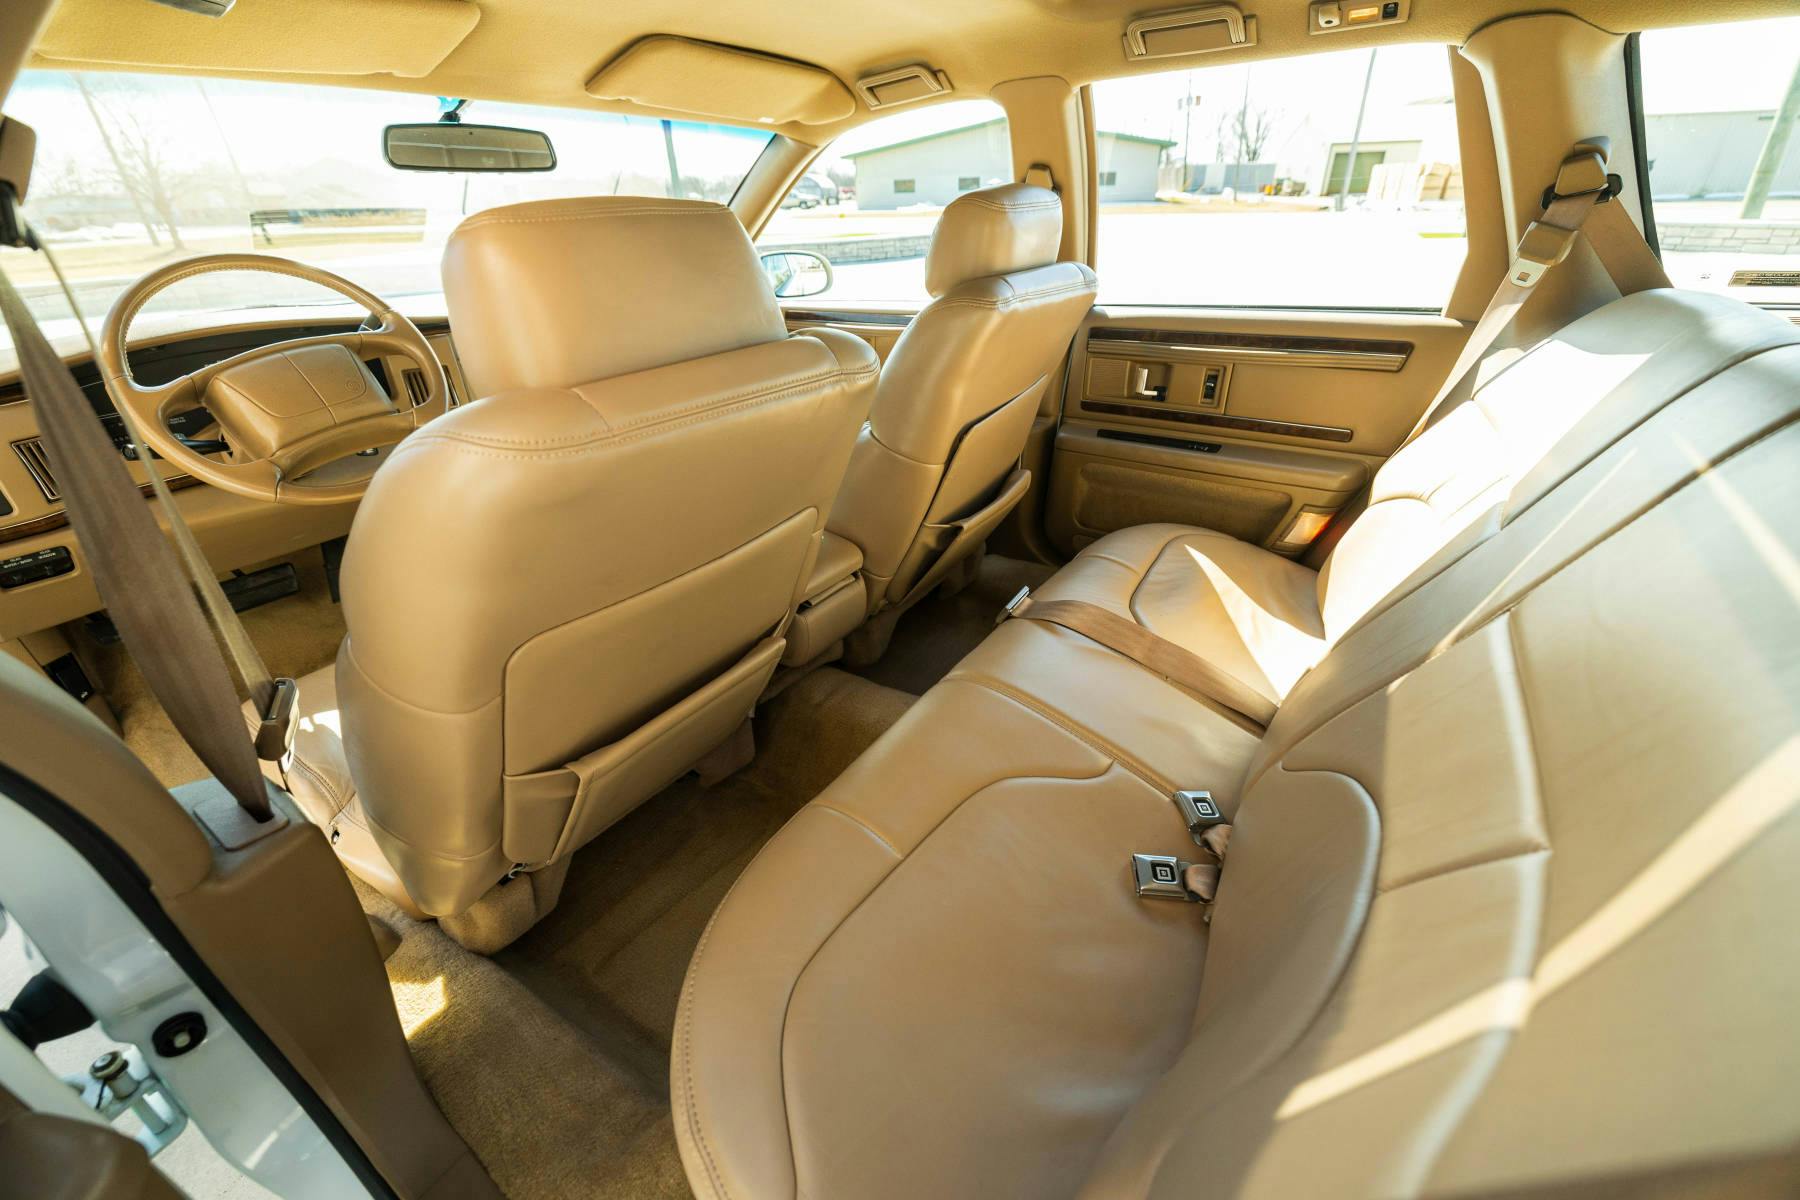 1996 Buick Roadmaster Estate Wagon interior rear seat